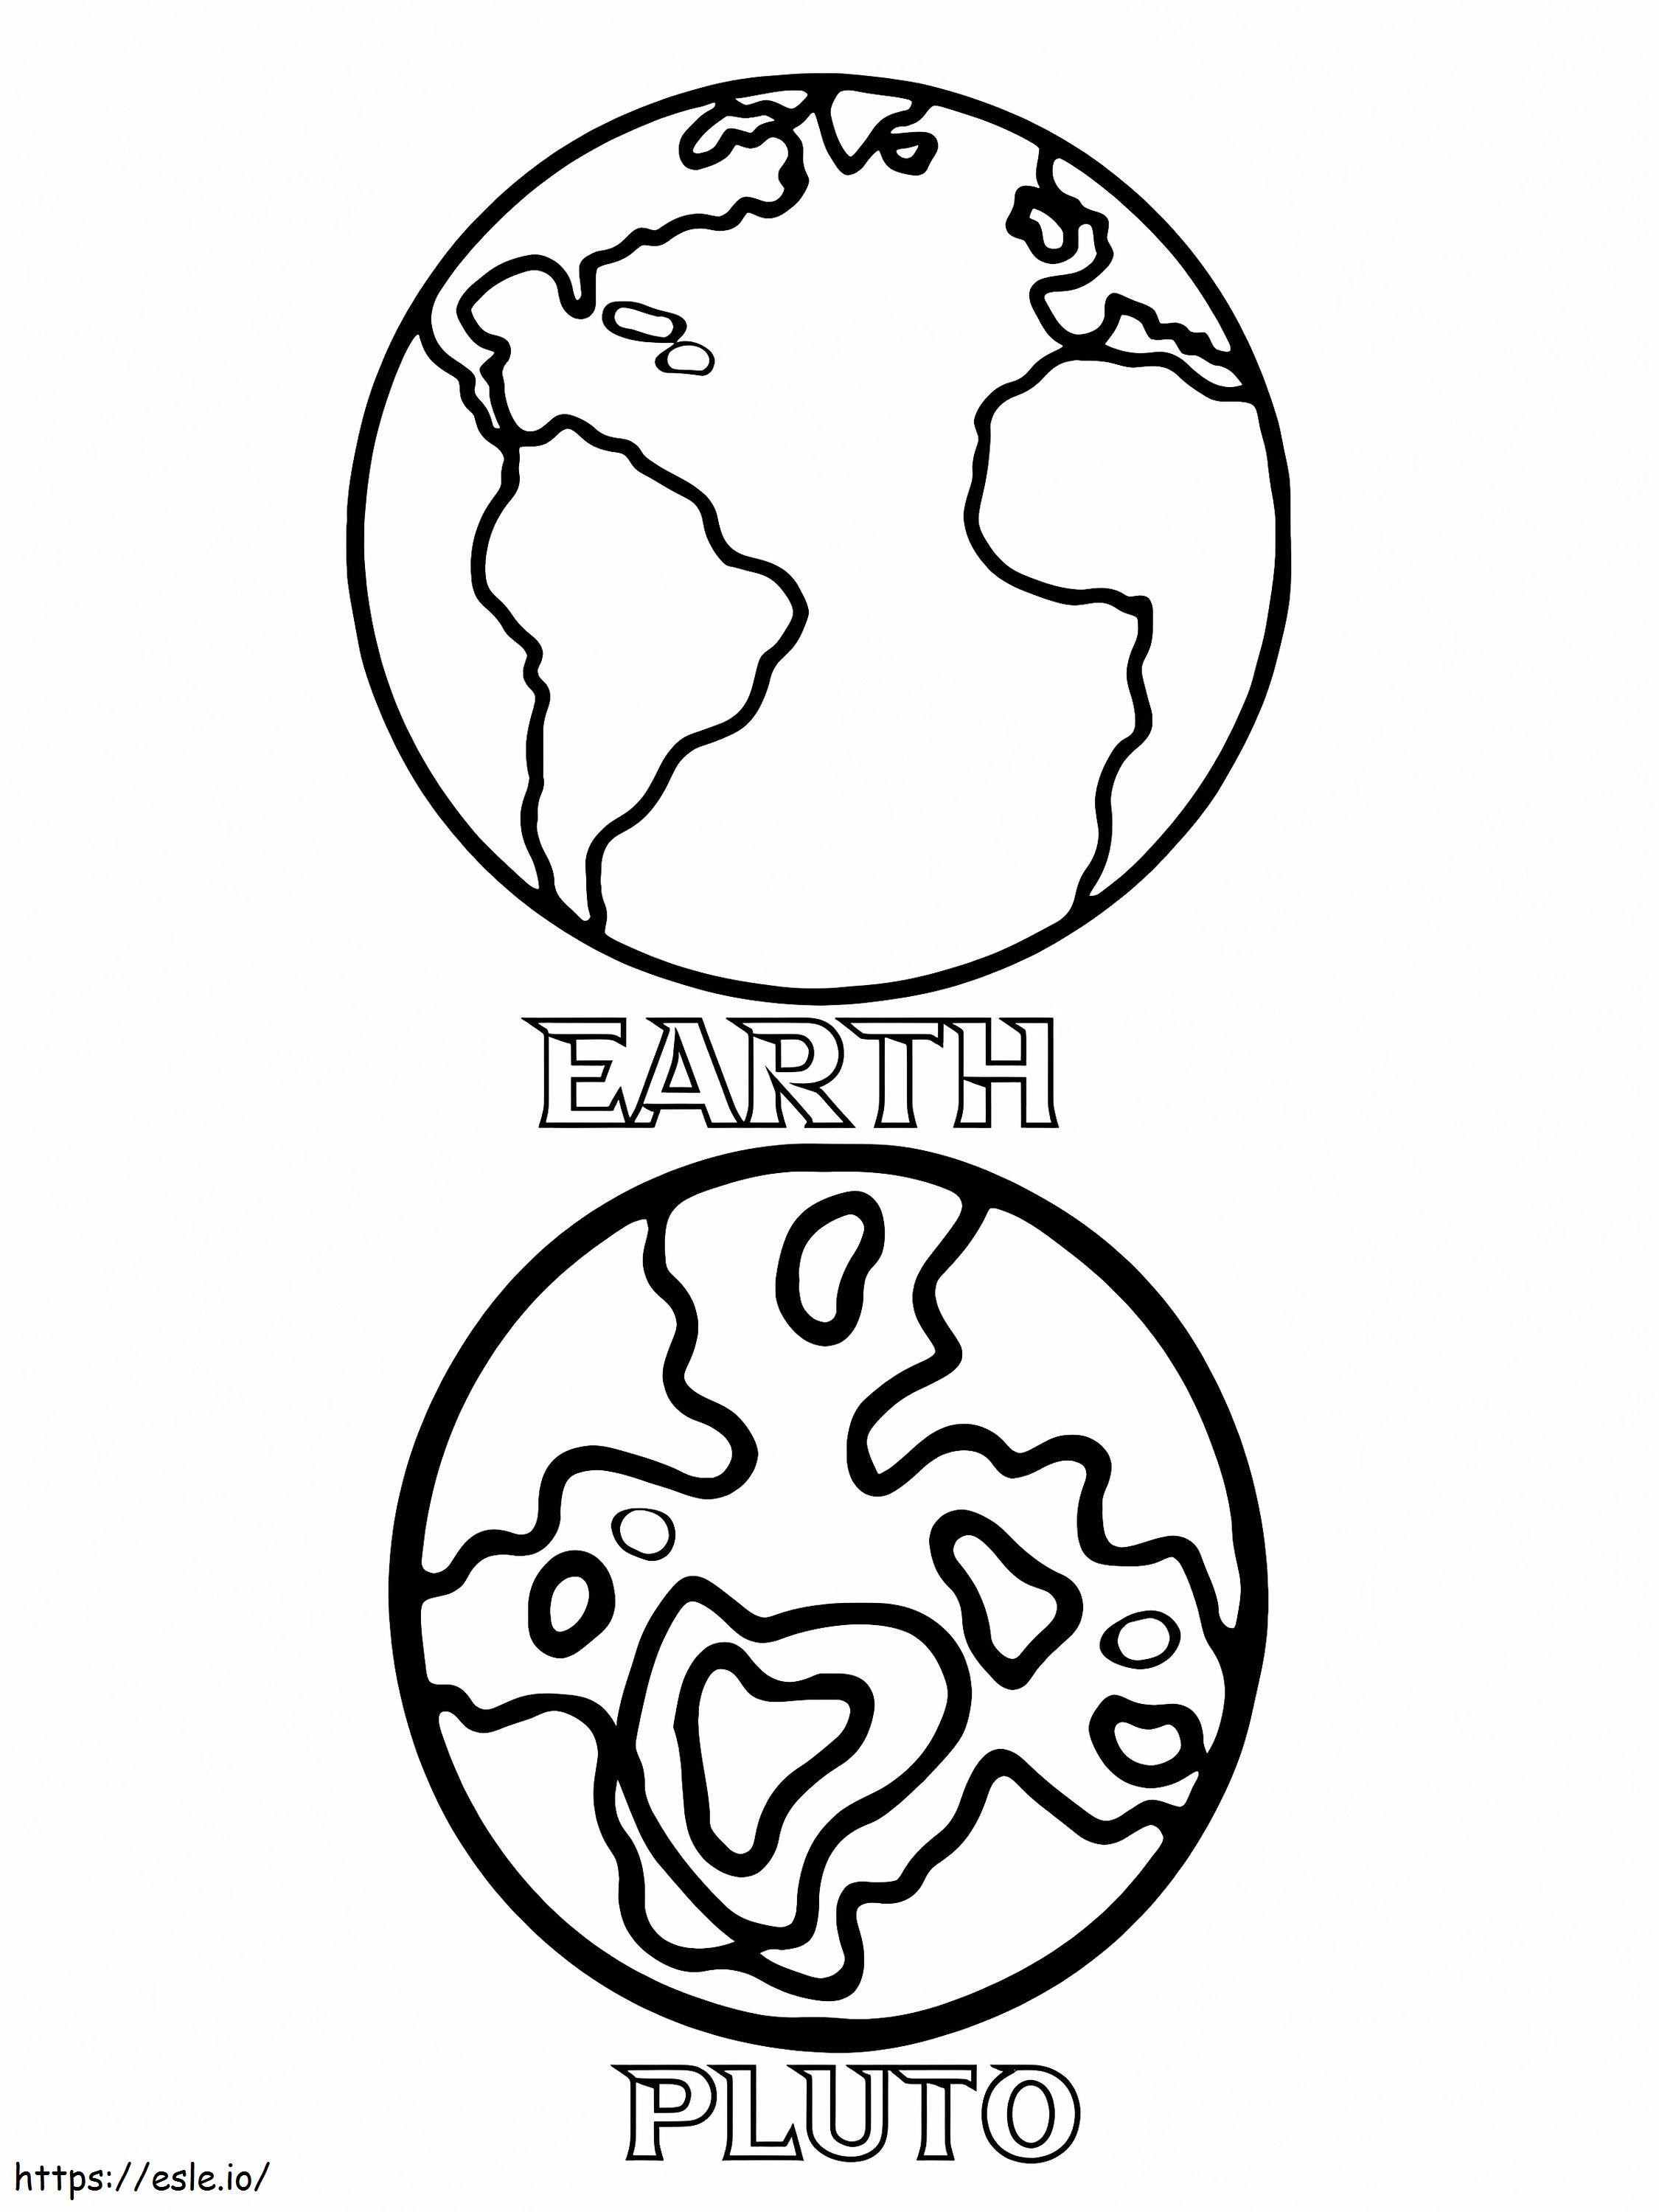 Terra e Plutão para colorir